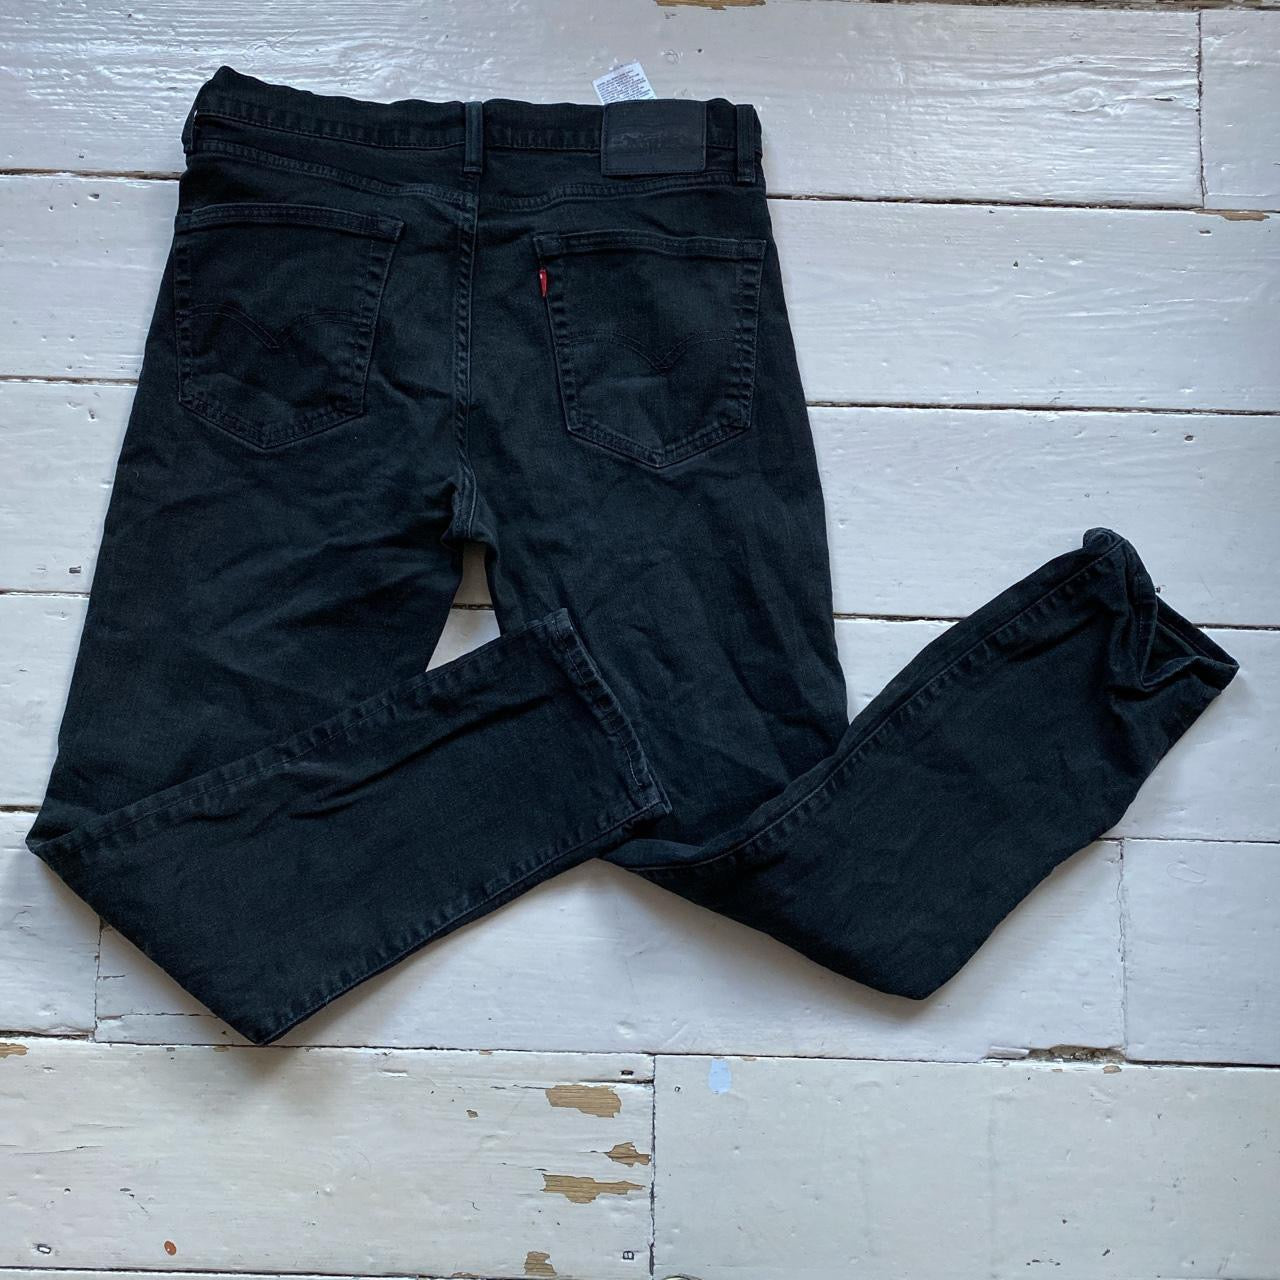 Levis 511 Slim Fit Black Jeans (36/32)